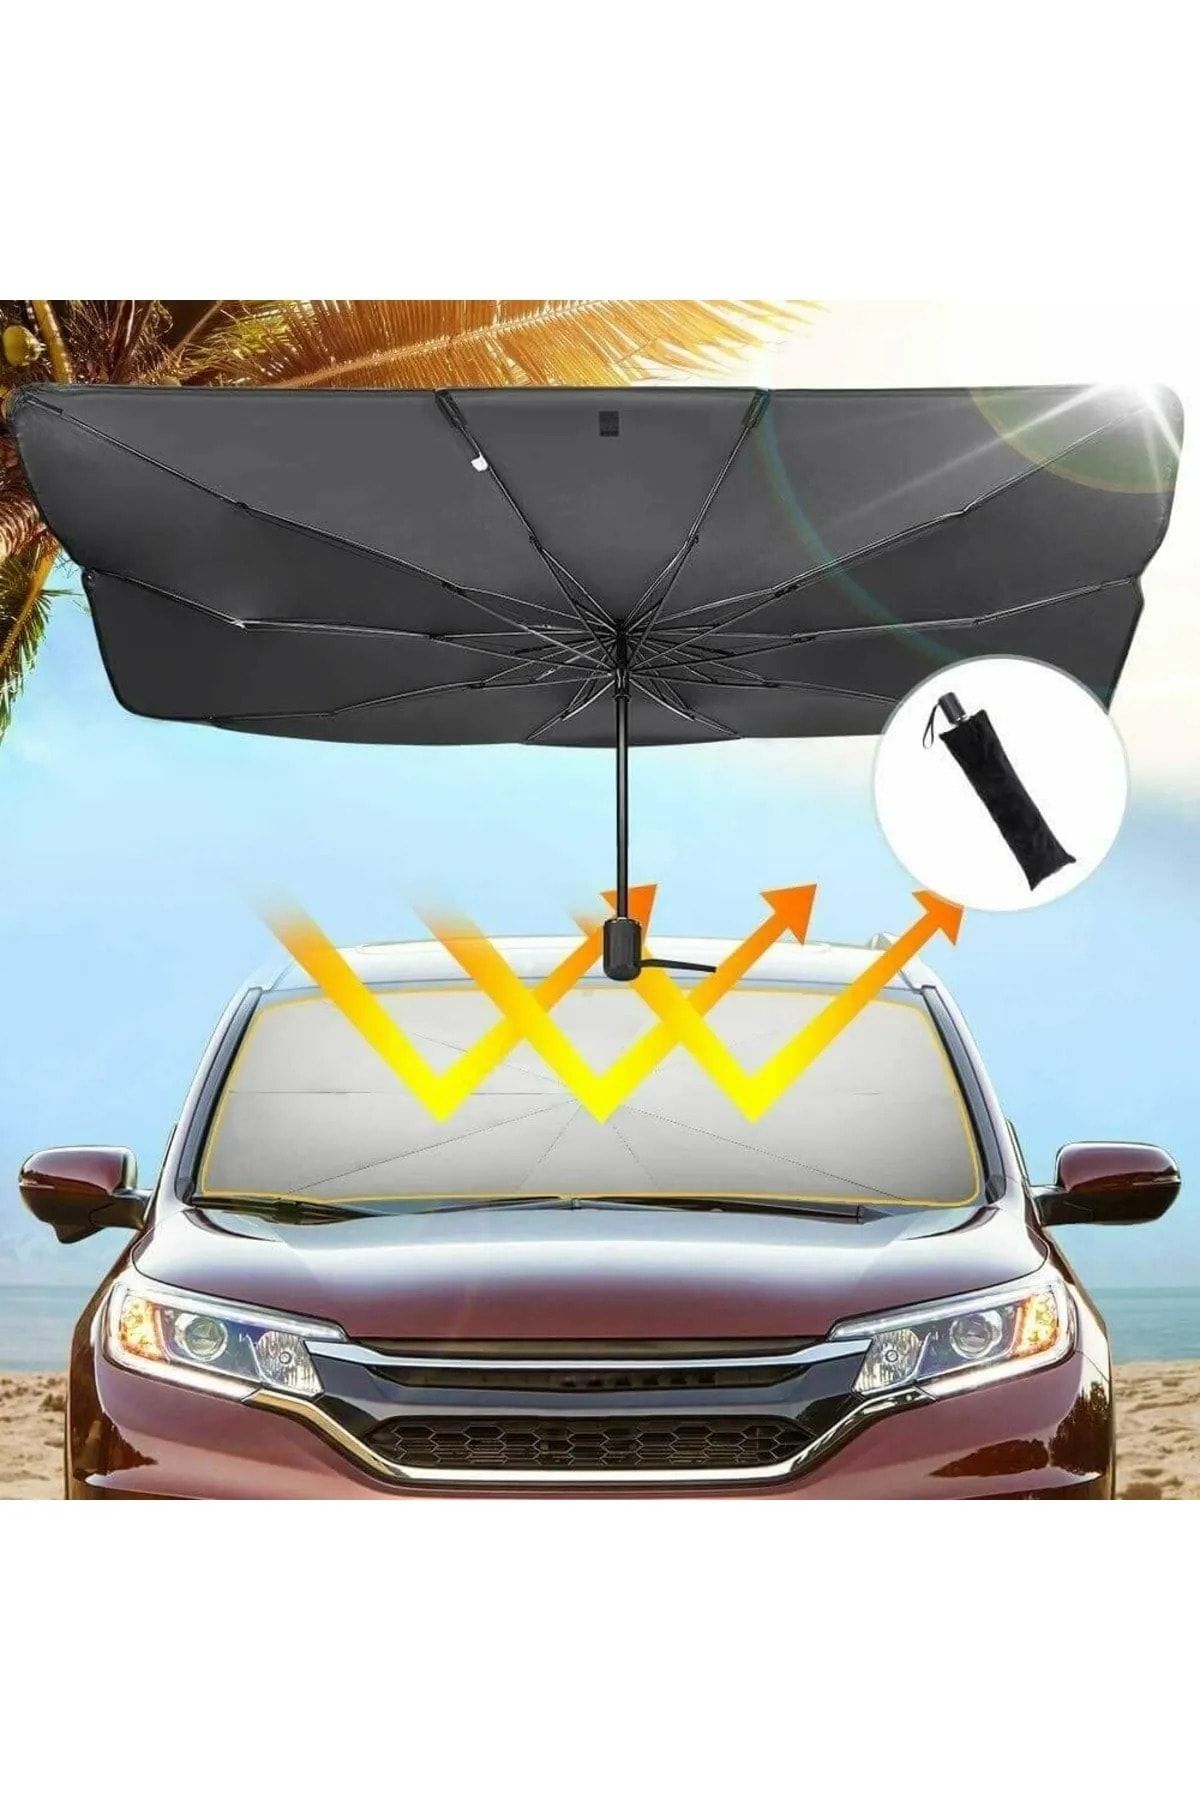 Universal Renault 18 Araba Ön Cam Güneşlik Katlanabilir Güneşlik Şemsiye Ön Cam Gölgelik